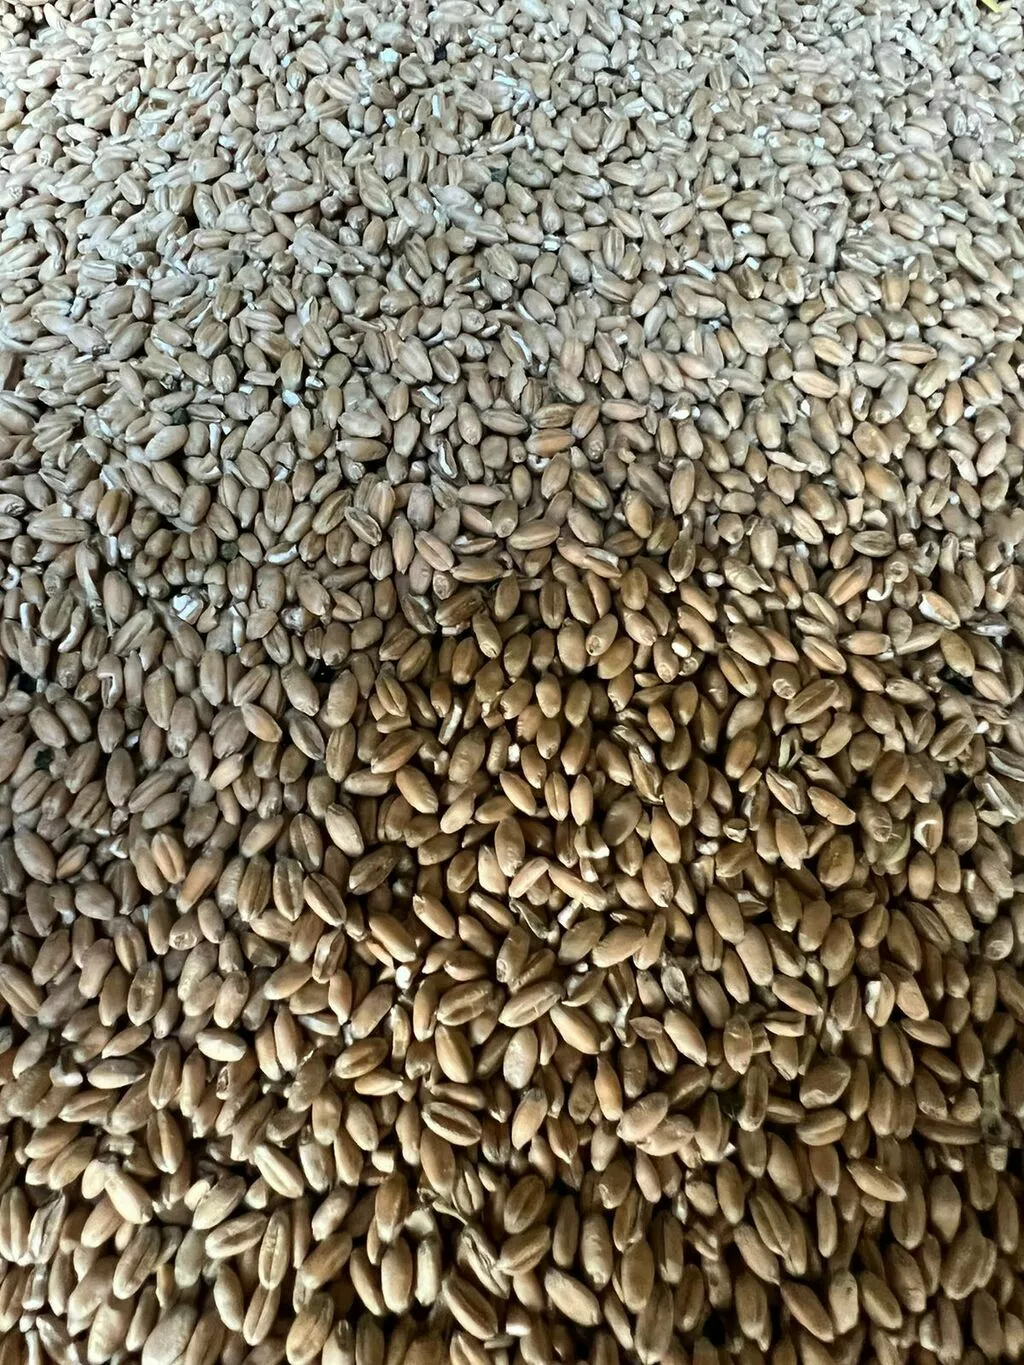 пшеница 5 класс 300тонн наличка  в Волгограде и Волгоградской области 3